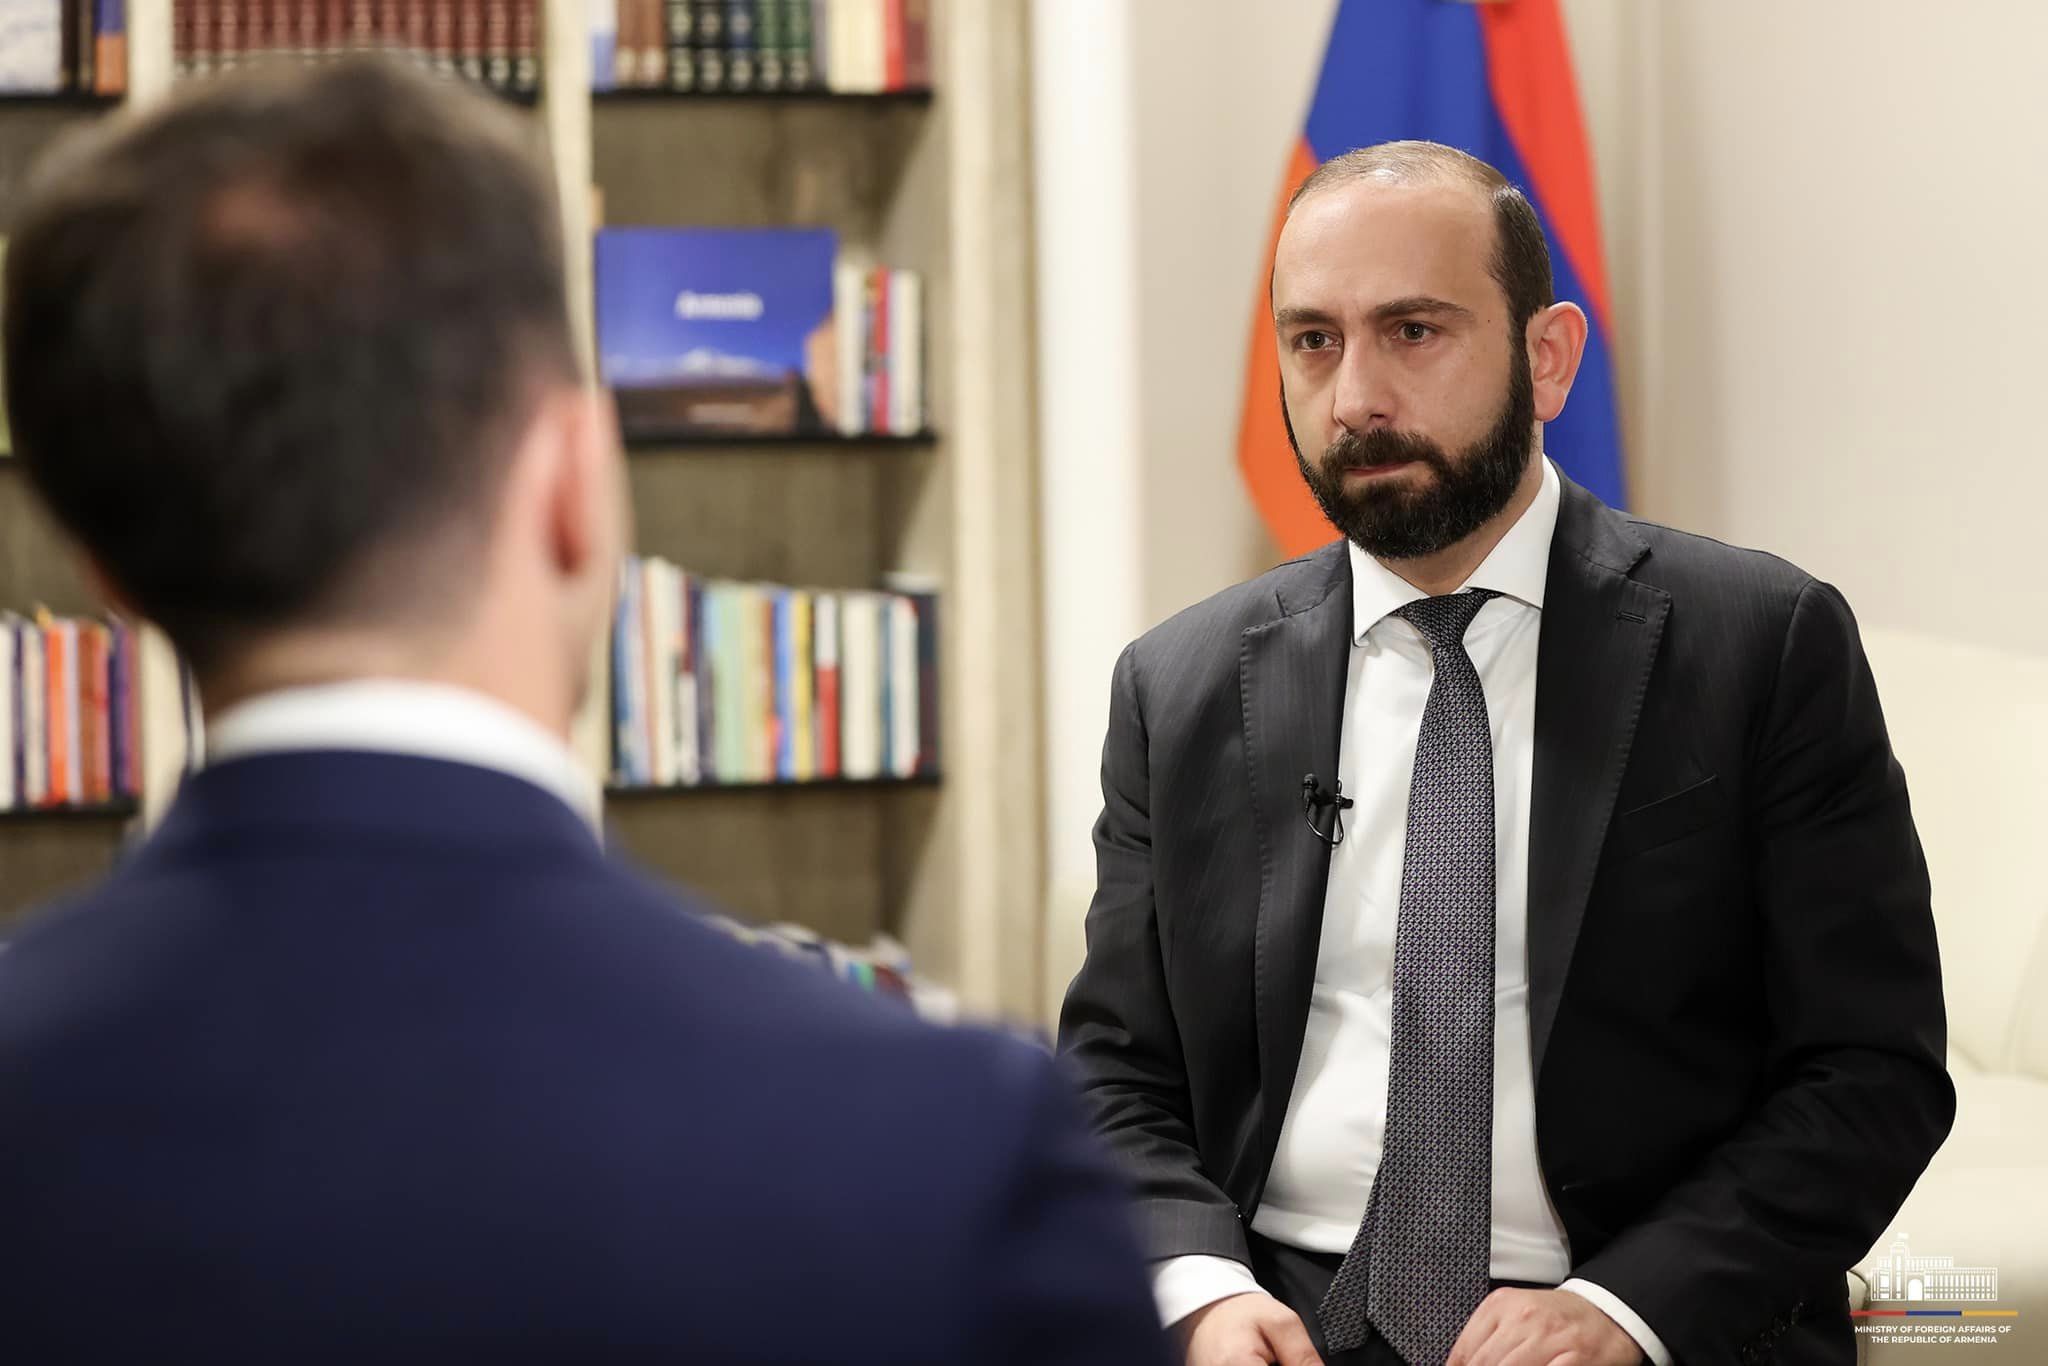 Հավատում ենք, որ հնարավոր է հասնել Ադրբեջանի հետ խաղաղության պայմանագրի կնքմանը. Միրզոյան